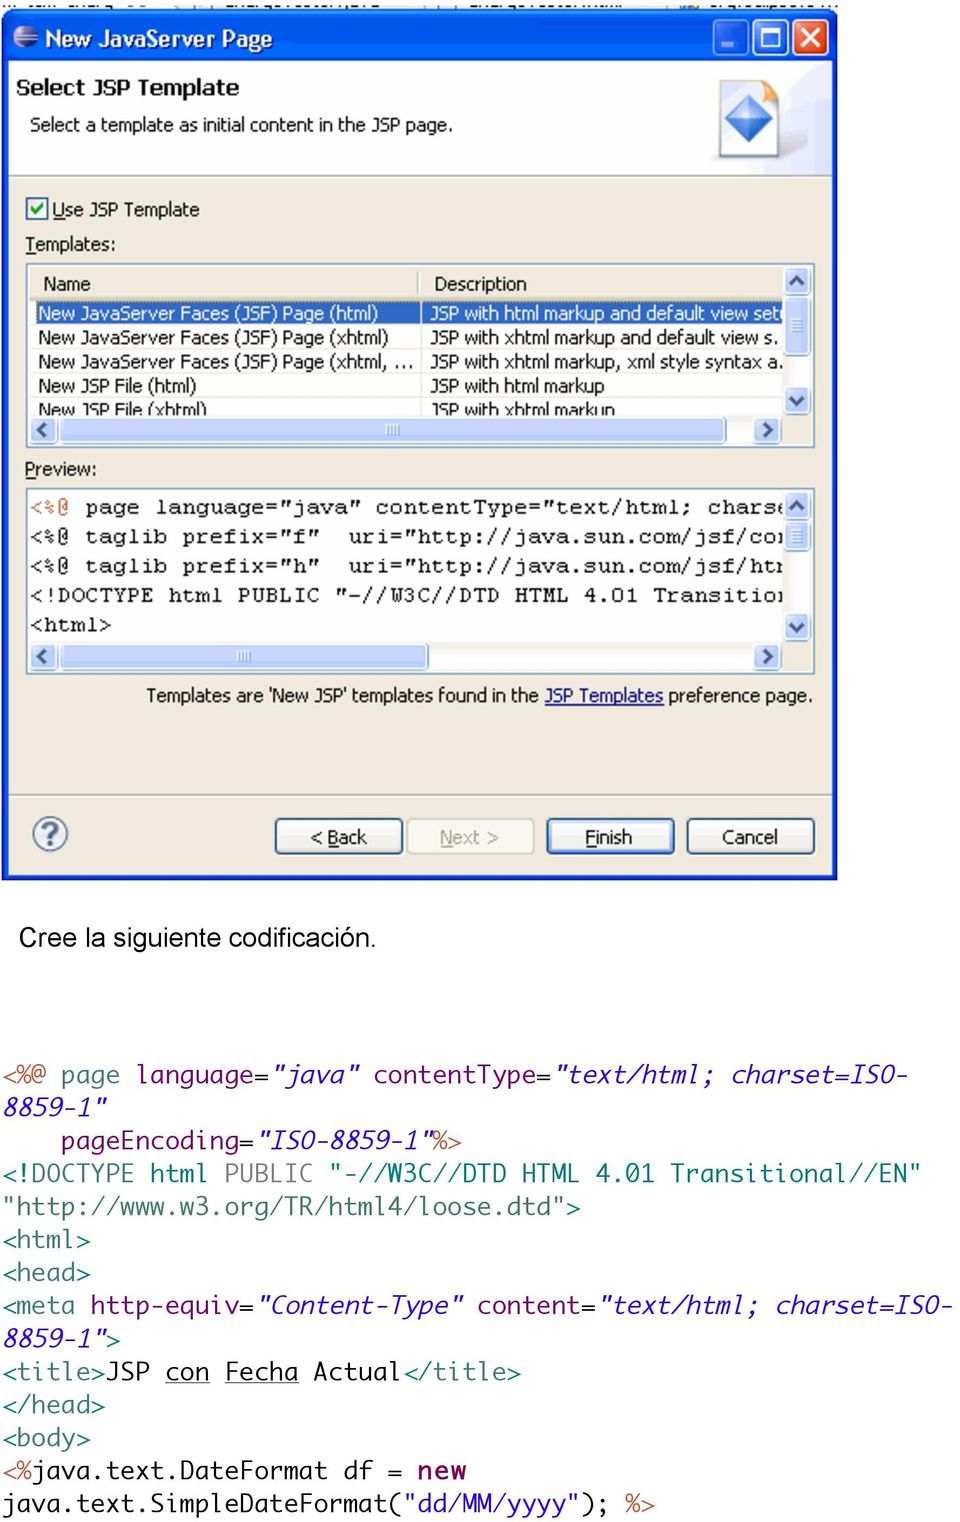 DOCTYPE html PUBLIC "-//W3C//DTD HTML 4.01 Transitional//EN" "http://www.w3.org/tr/html4/loose.